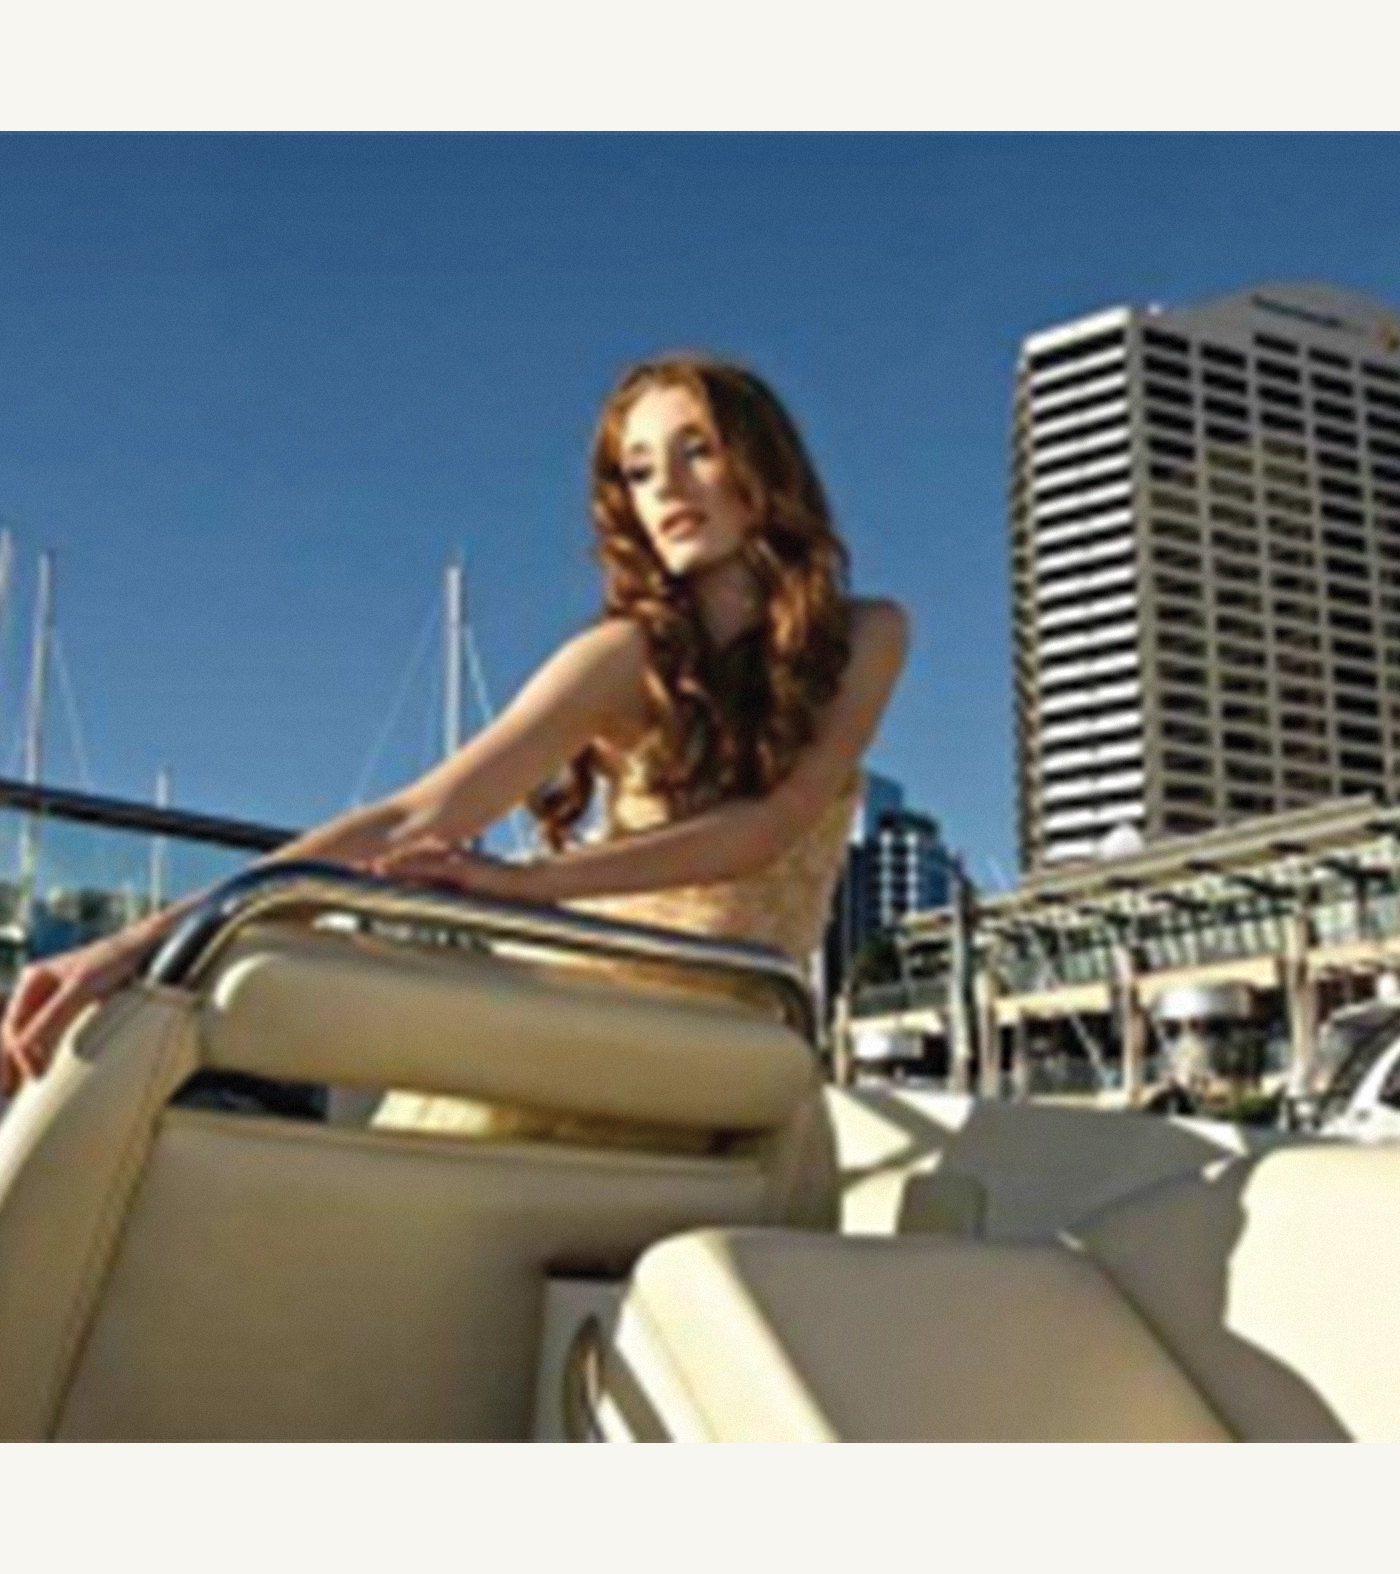 1-Sydney International Boat Show_Mobile Carousel_v1_0508